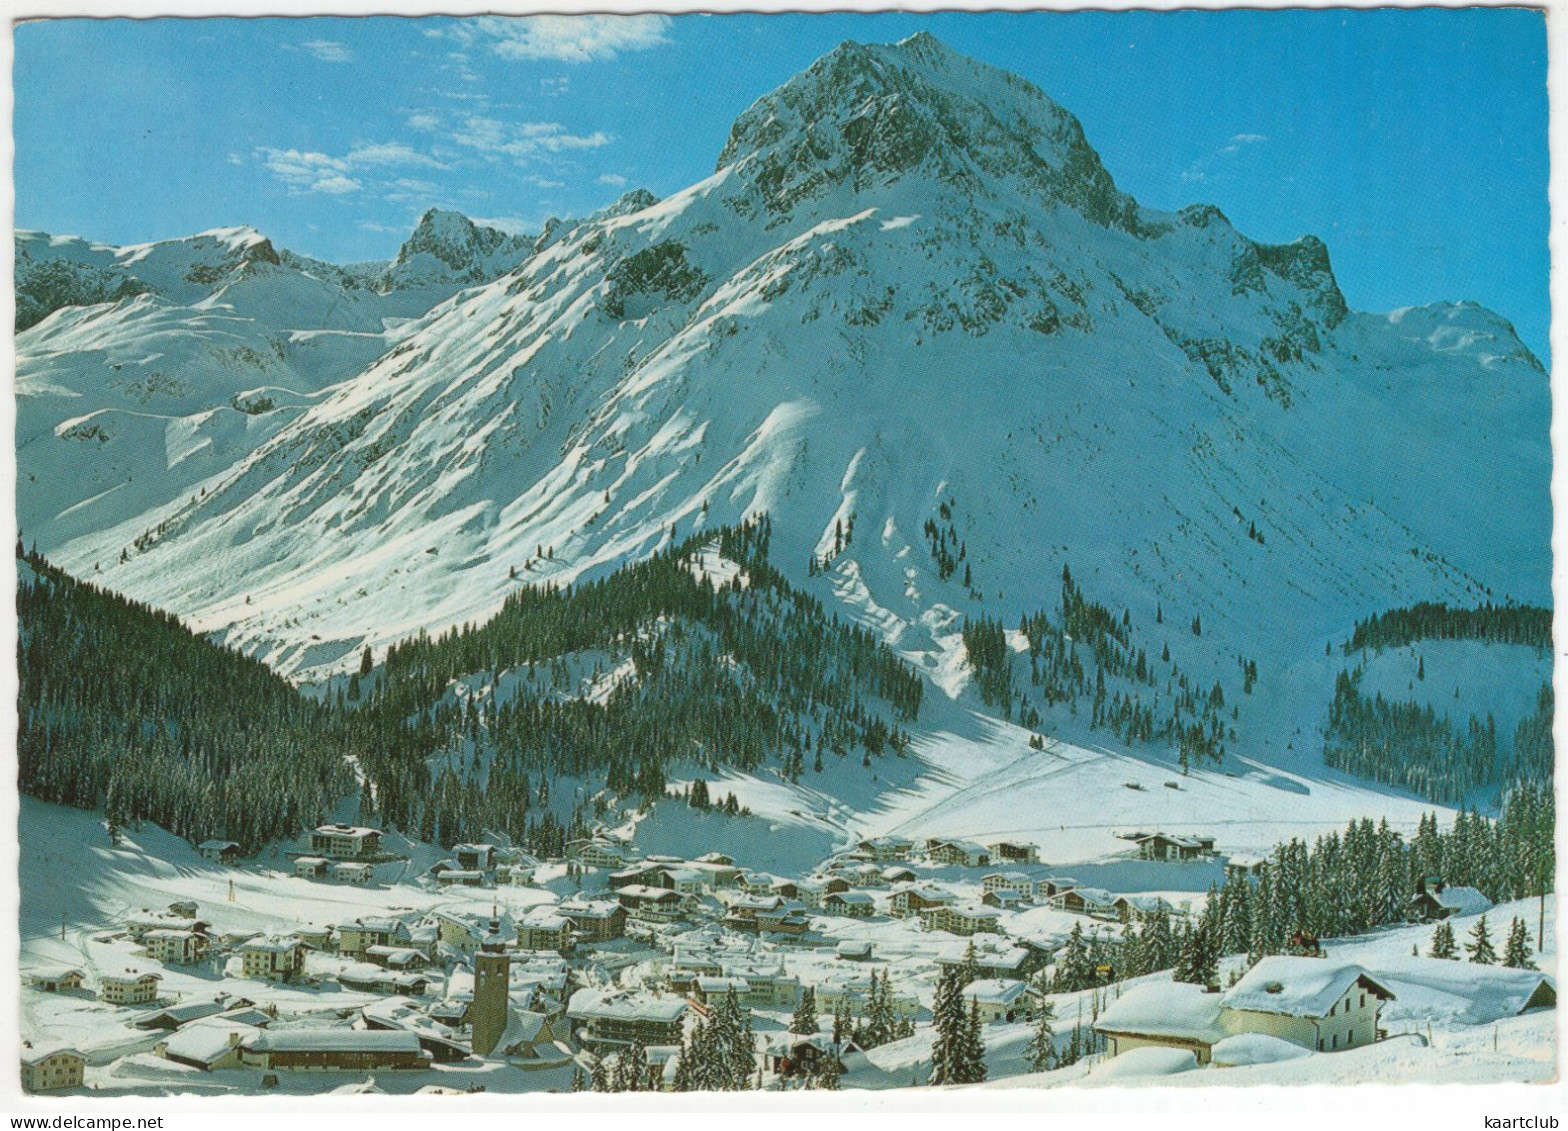 Internationaler Wintersportplatz Lech Am Arlberg, 1450-1730 M Mit Omeshorn 2472 M - (Österreich/Austria) - Lech